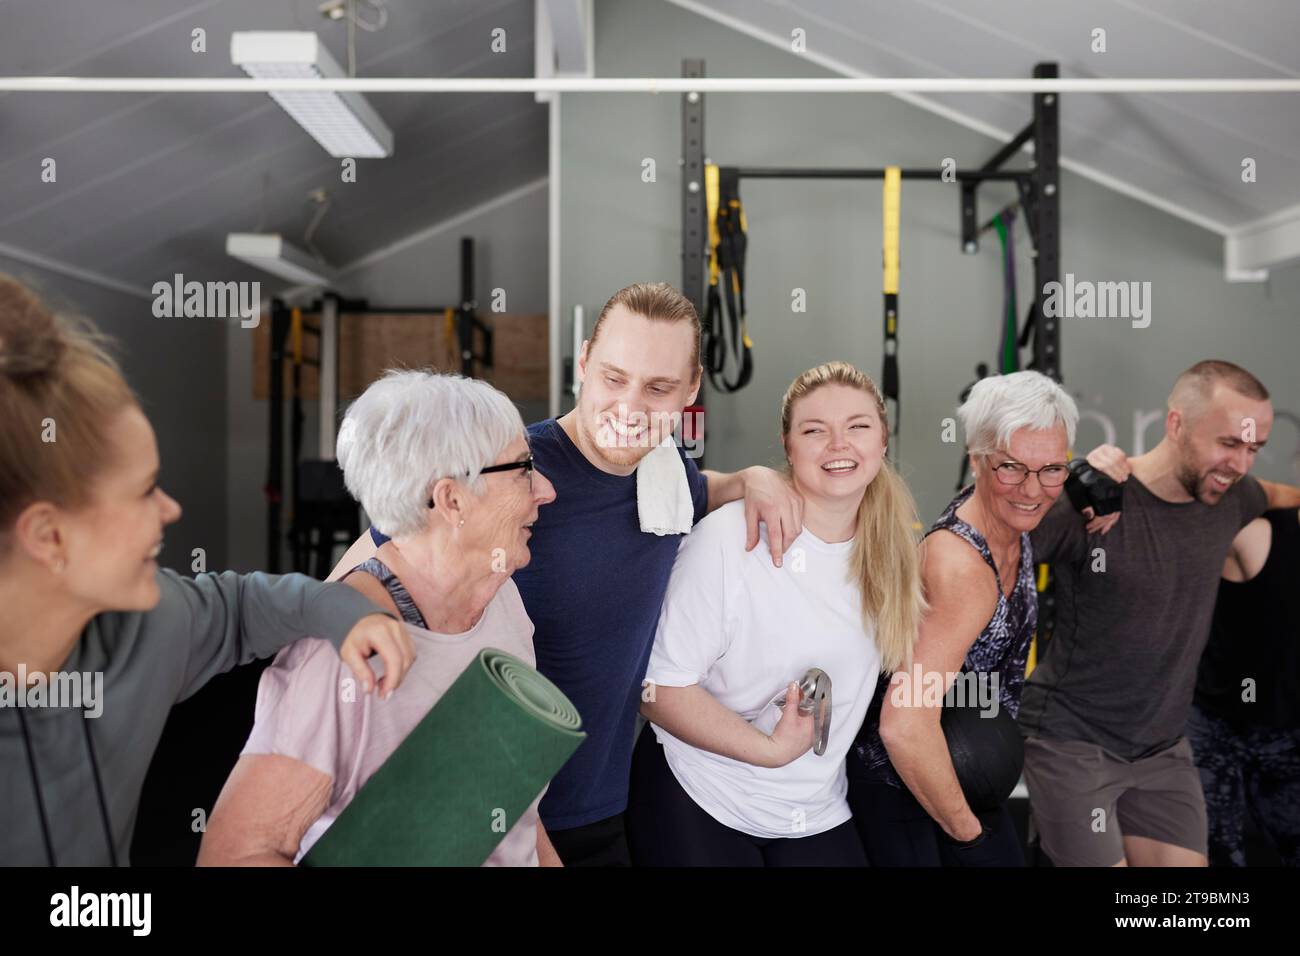 Glückliche Leute im Fitnessstudio, die in die Kamera schauen Stockfoto